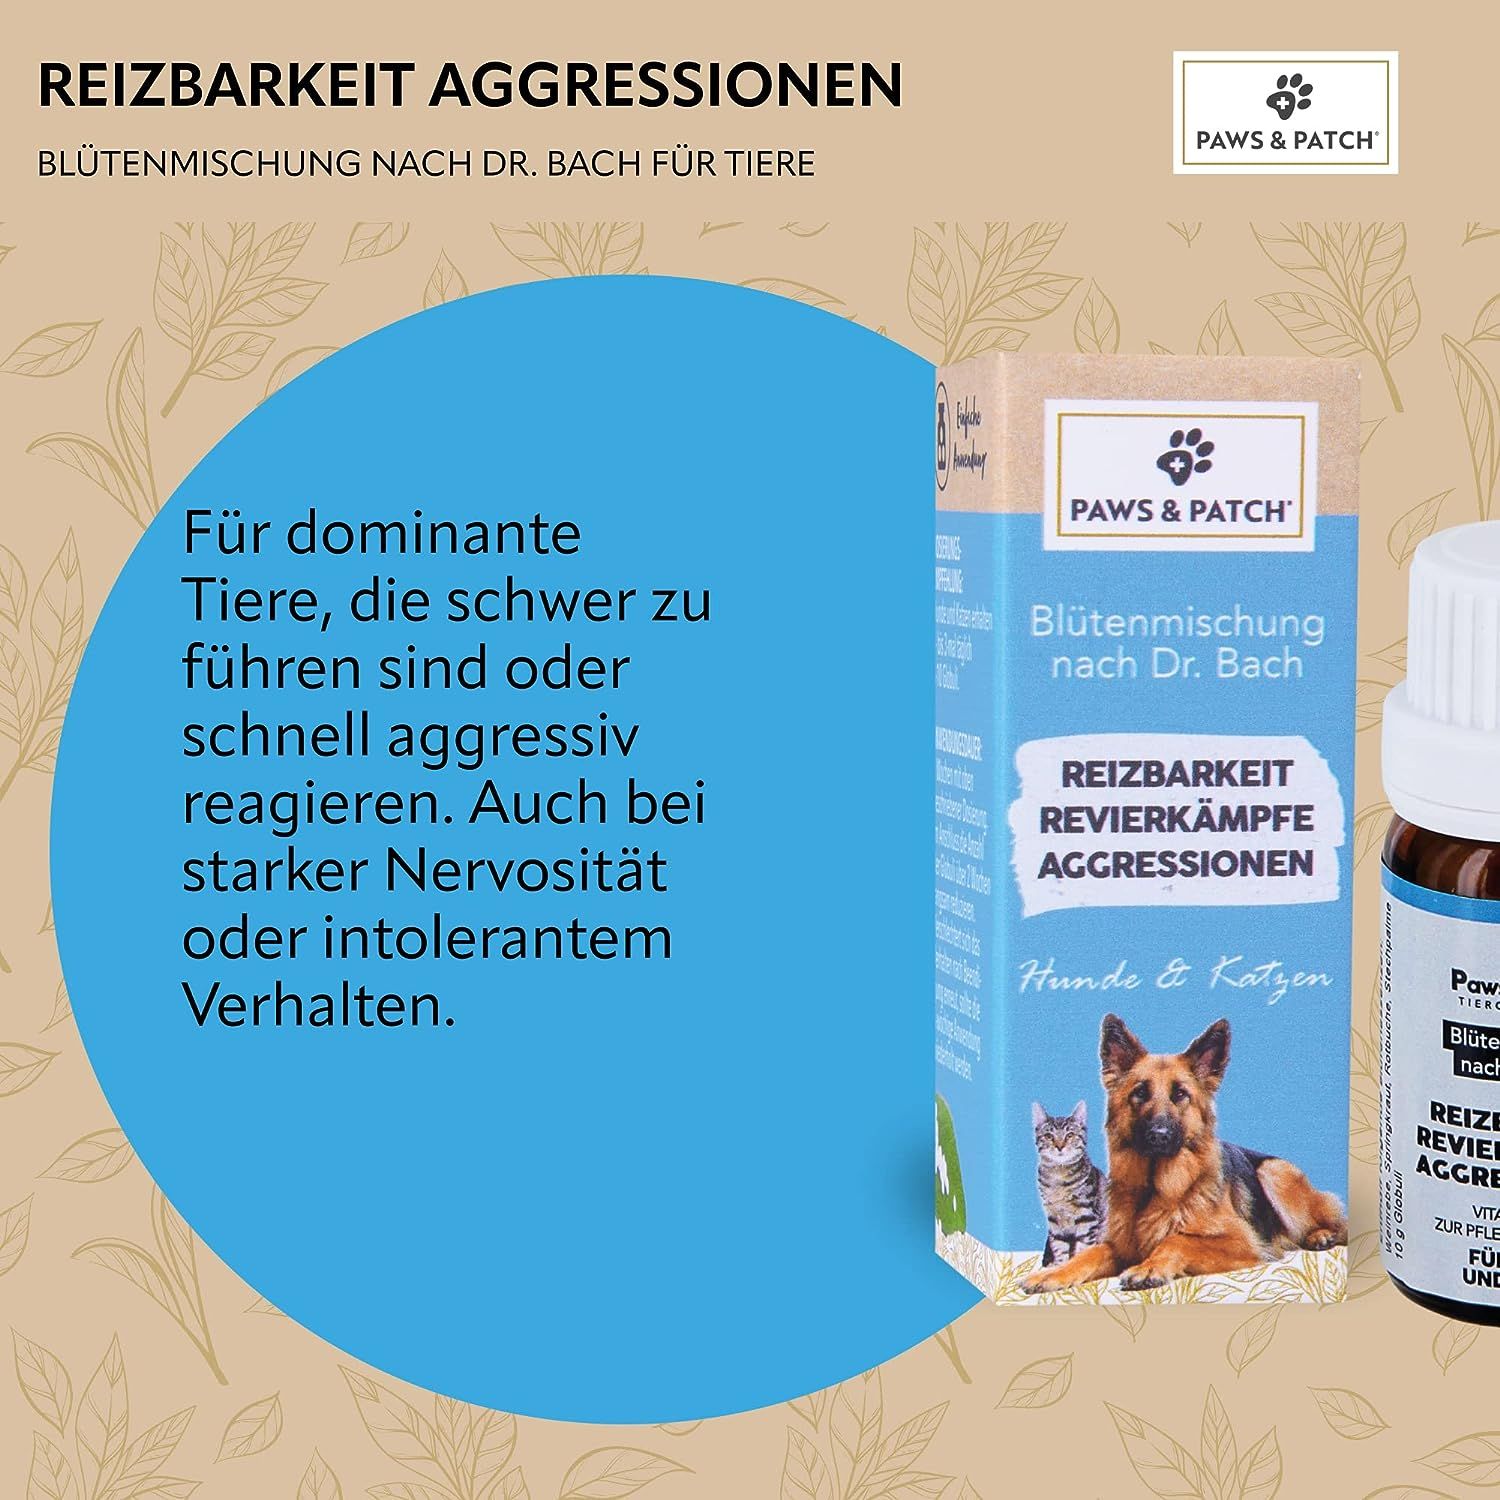 PAWS&PATCH Blütenmischung nach Dr. Bach REIZBARKEIT REVIERKÄMPFE AGGRESSIONEN für Hunde und Katzen